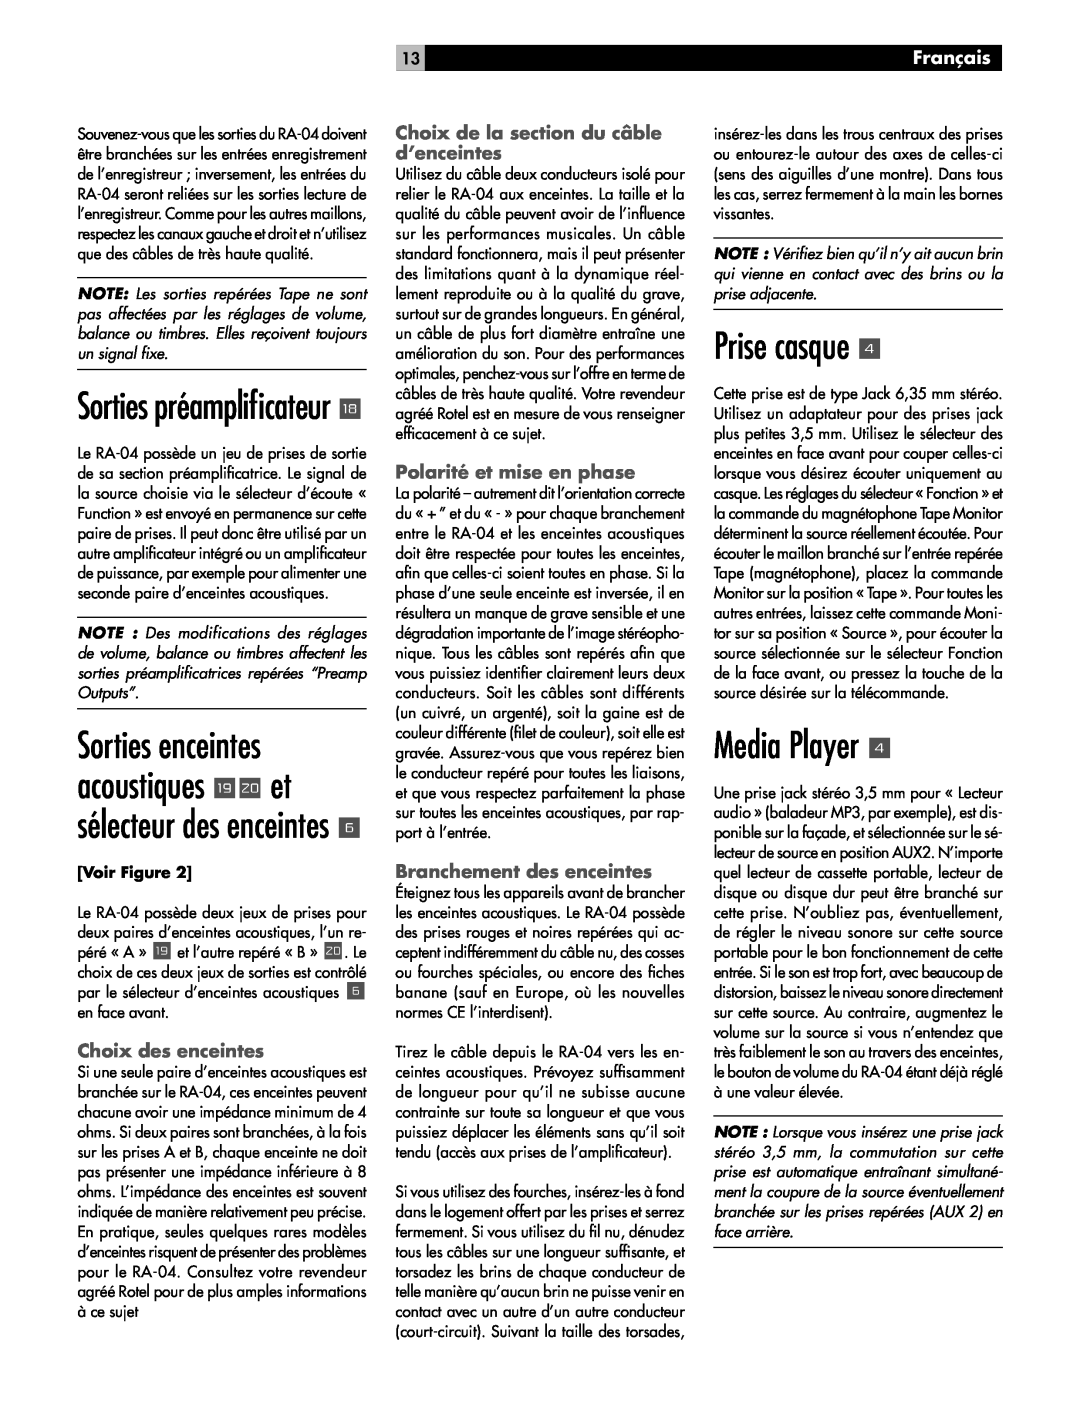 Rotel RA-04 owner manual Prise casque, Sorties préampliﬁcateur y, Media Player, Français, Choix des enceintes 